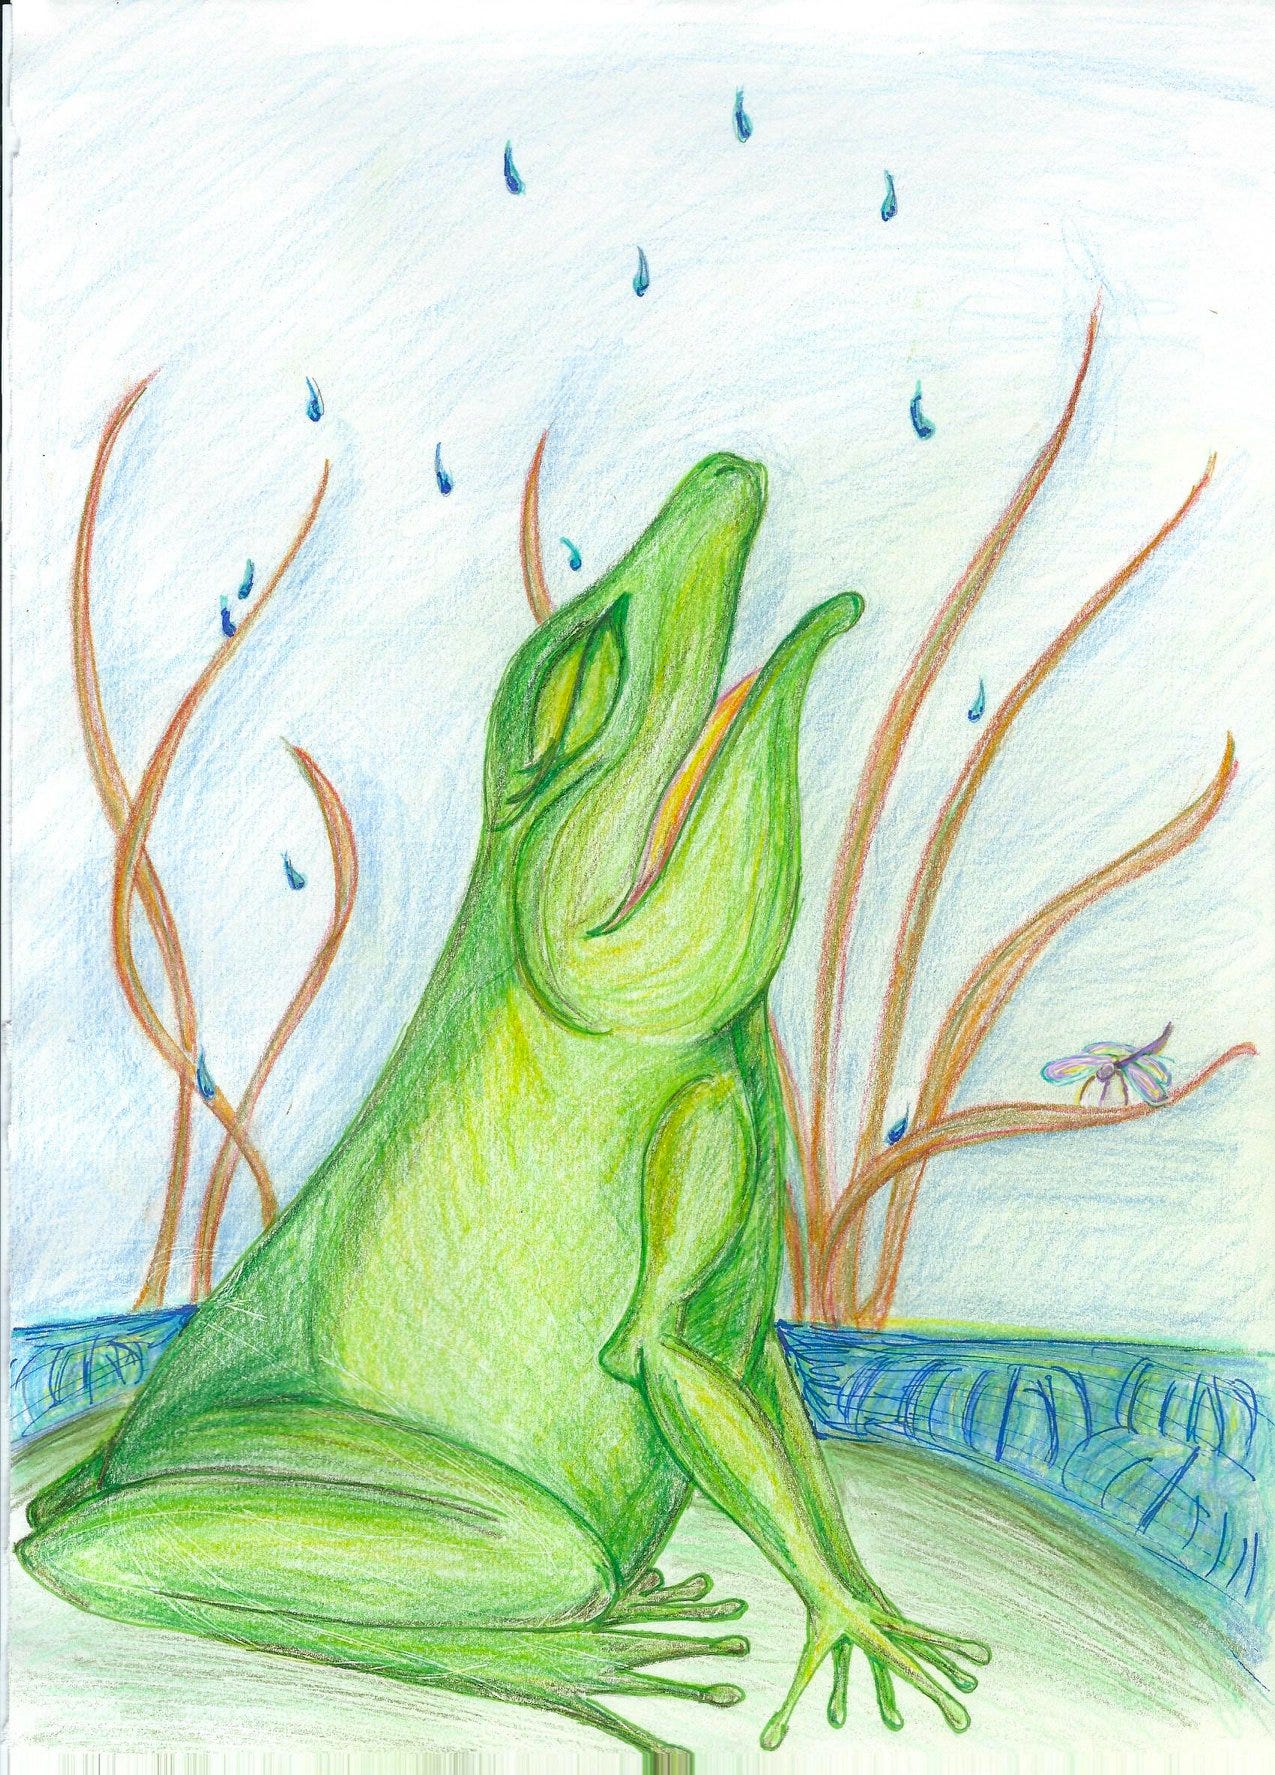 Frog created by Lora Keddie